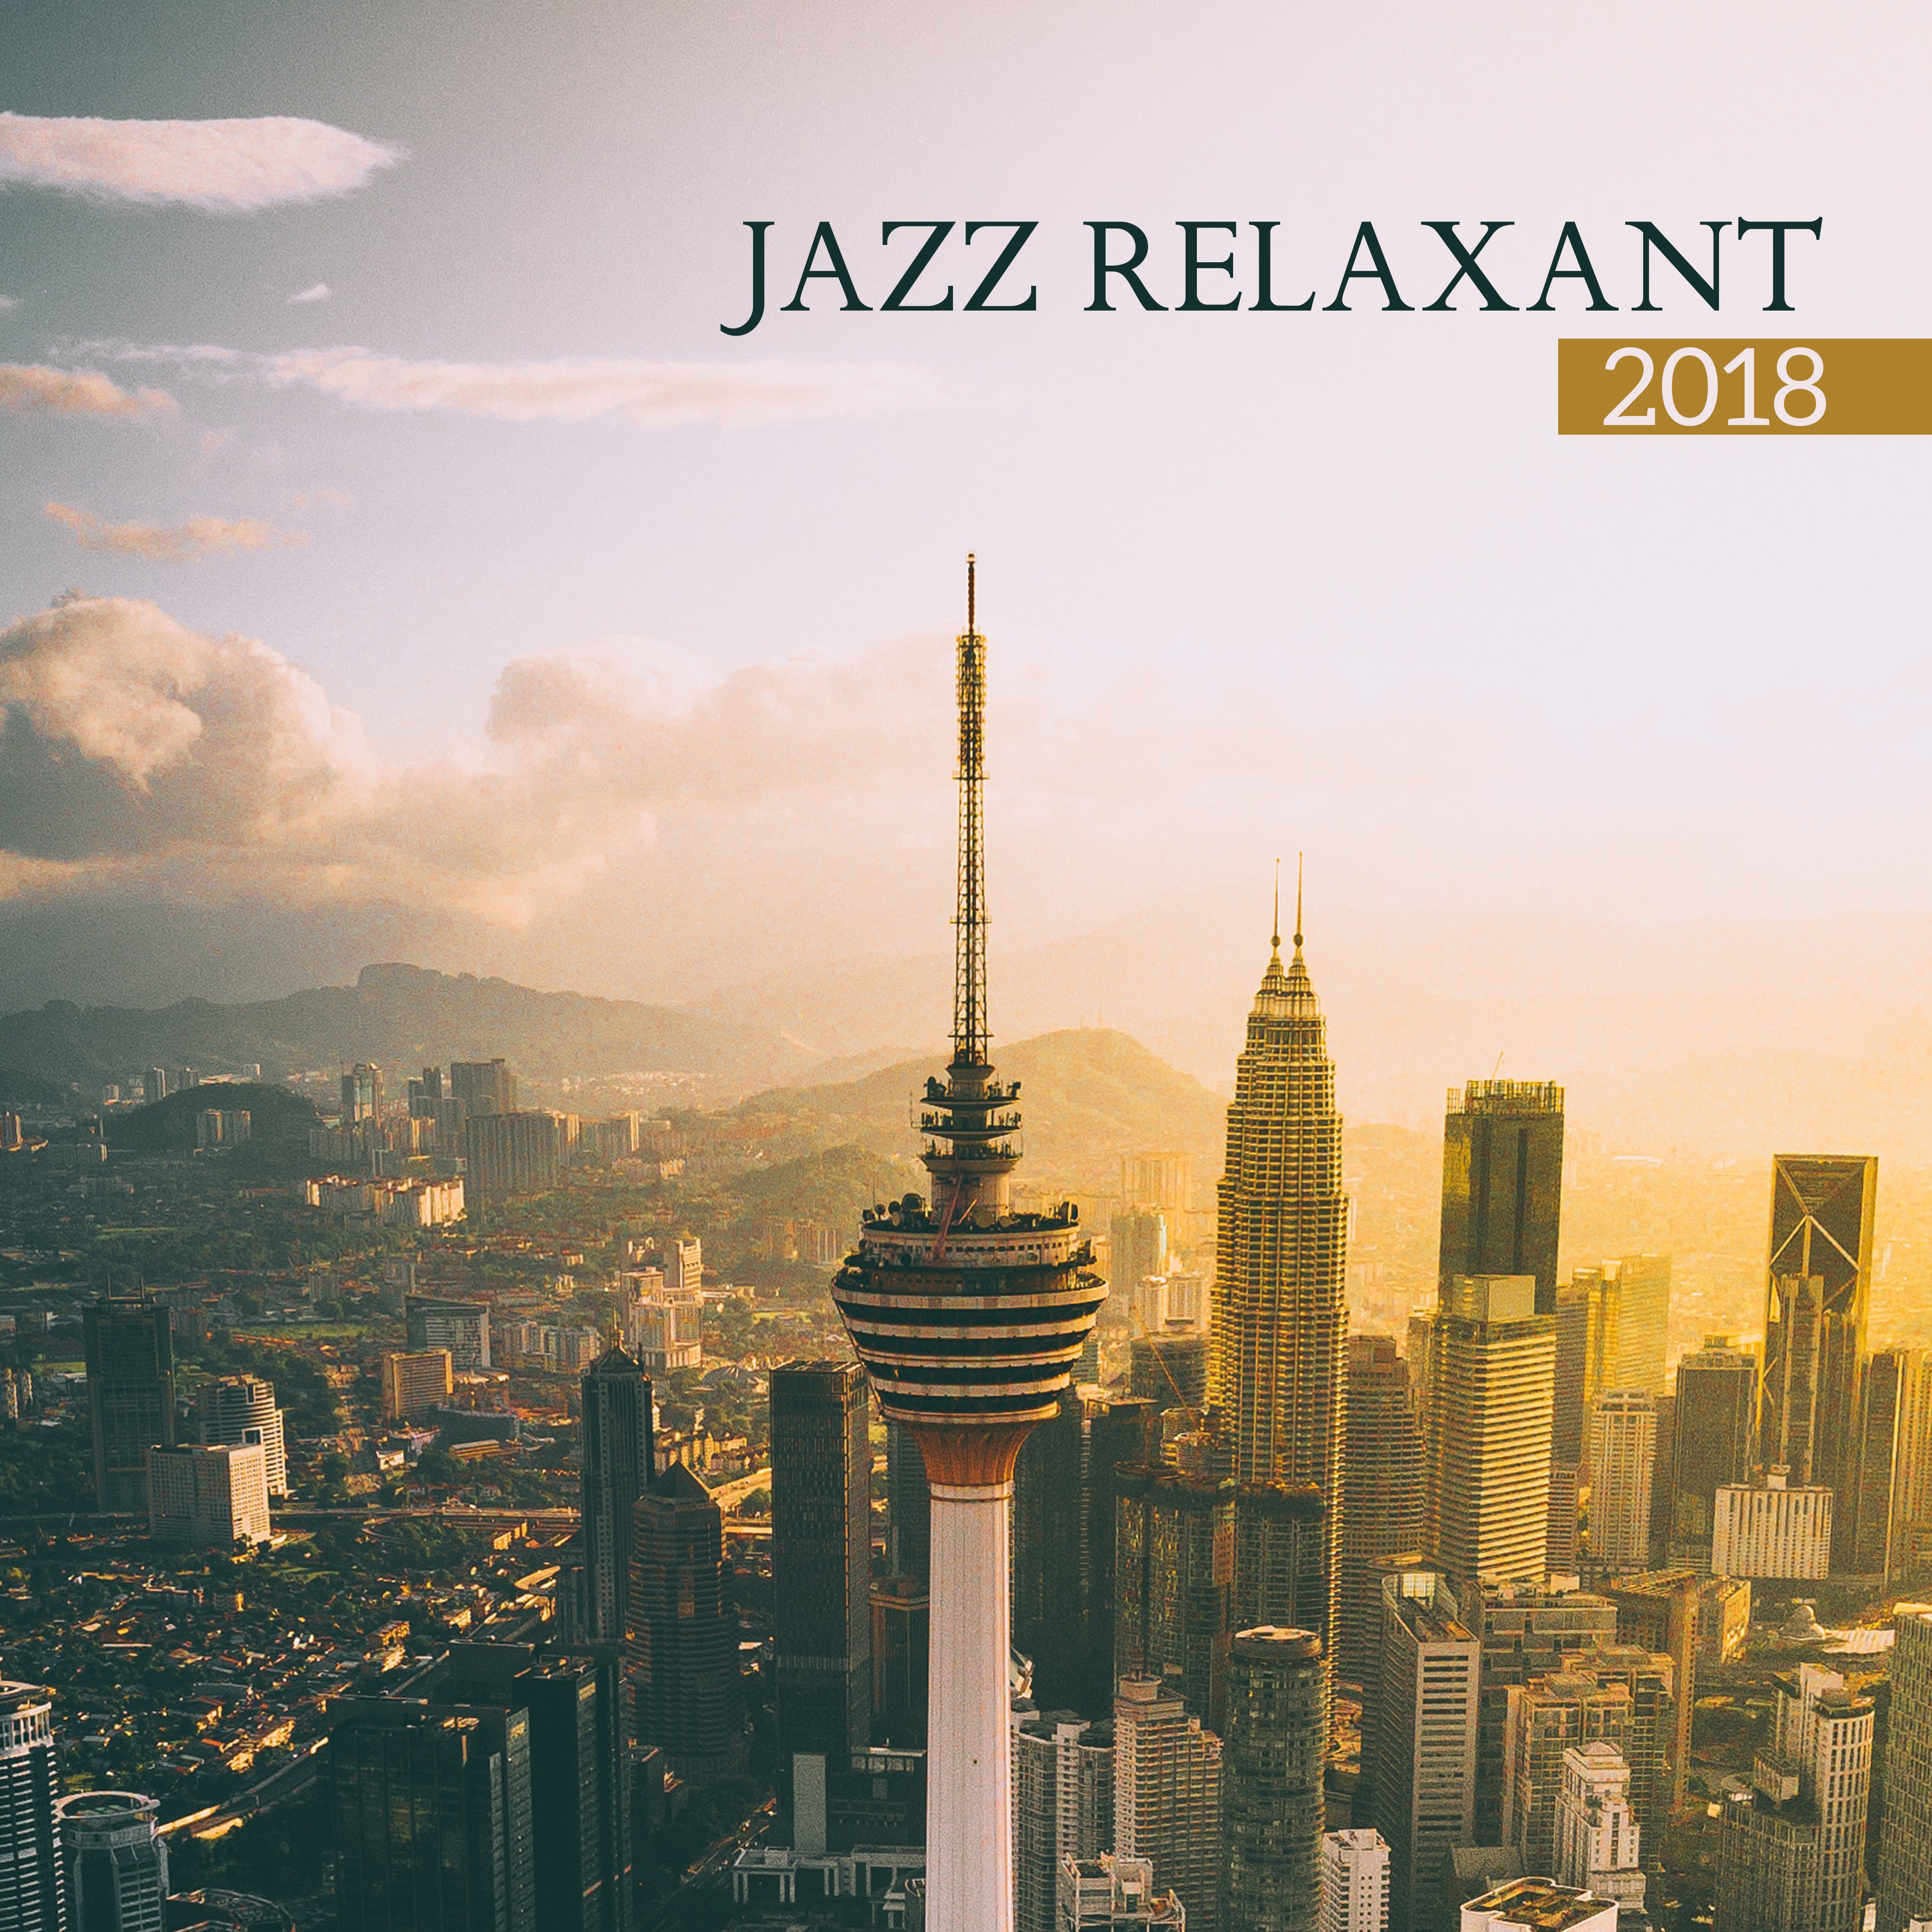 Jazz relaxant 2018